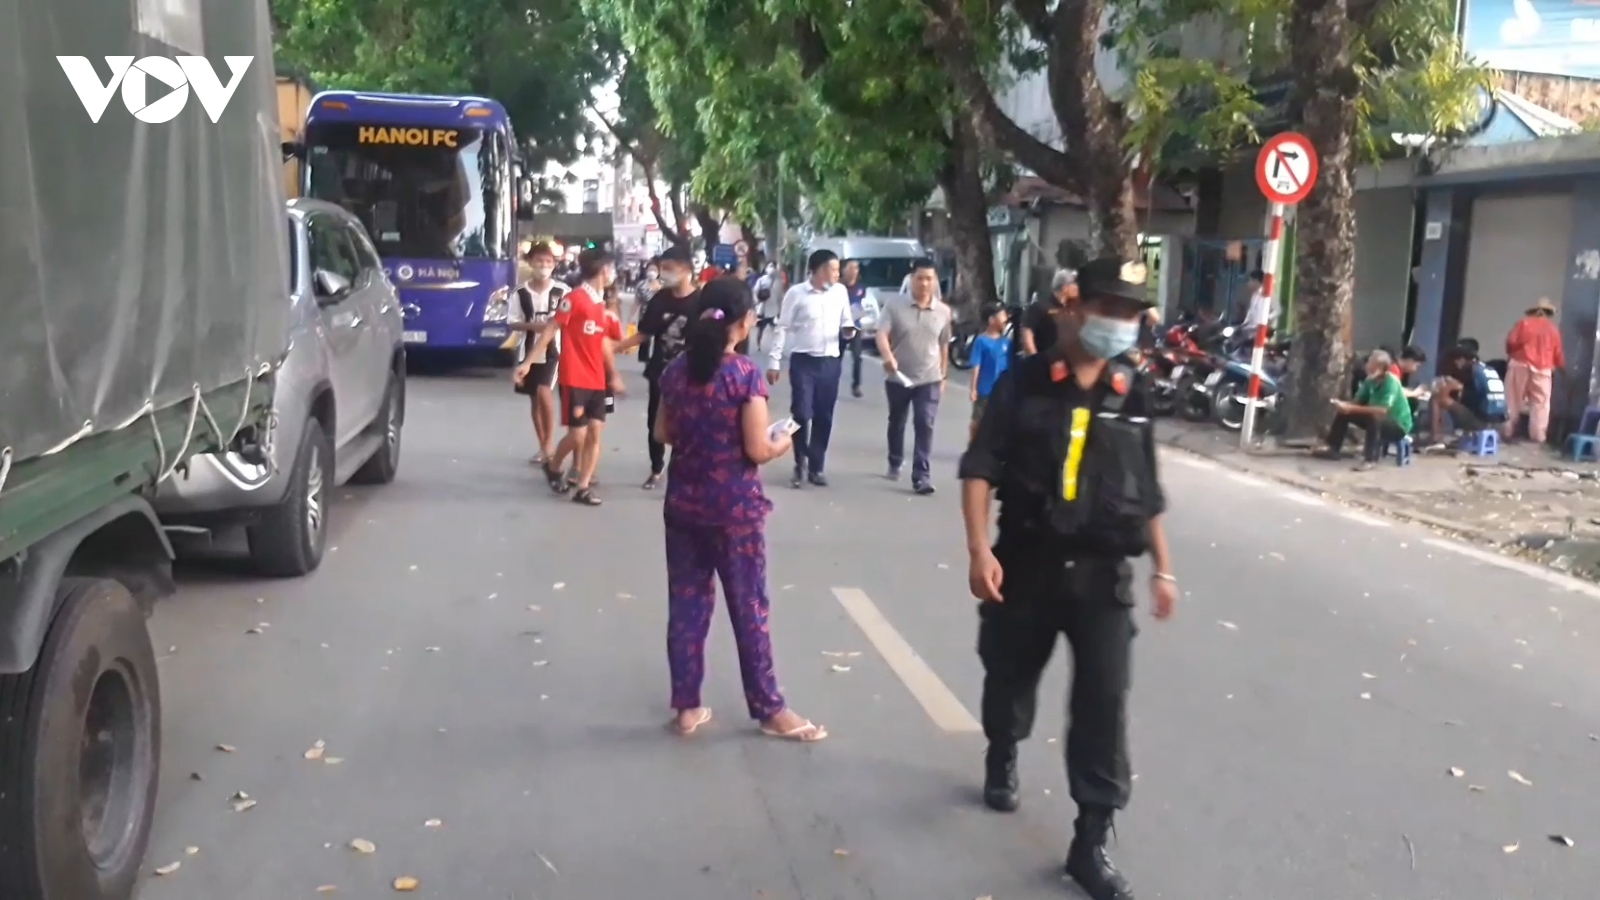 "Phe vé" trận Hà Nội FC - Hải Phòng ngán ngẩm vì không có người mua